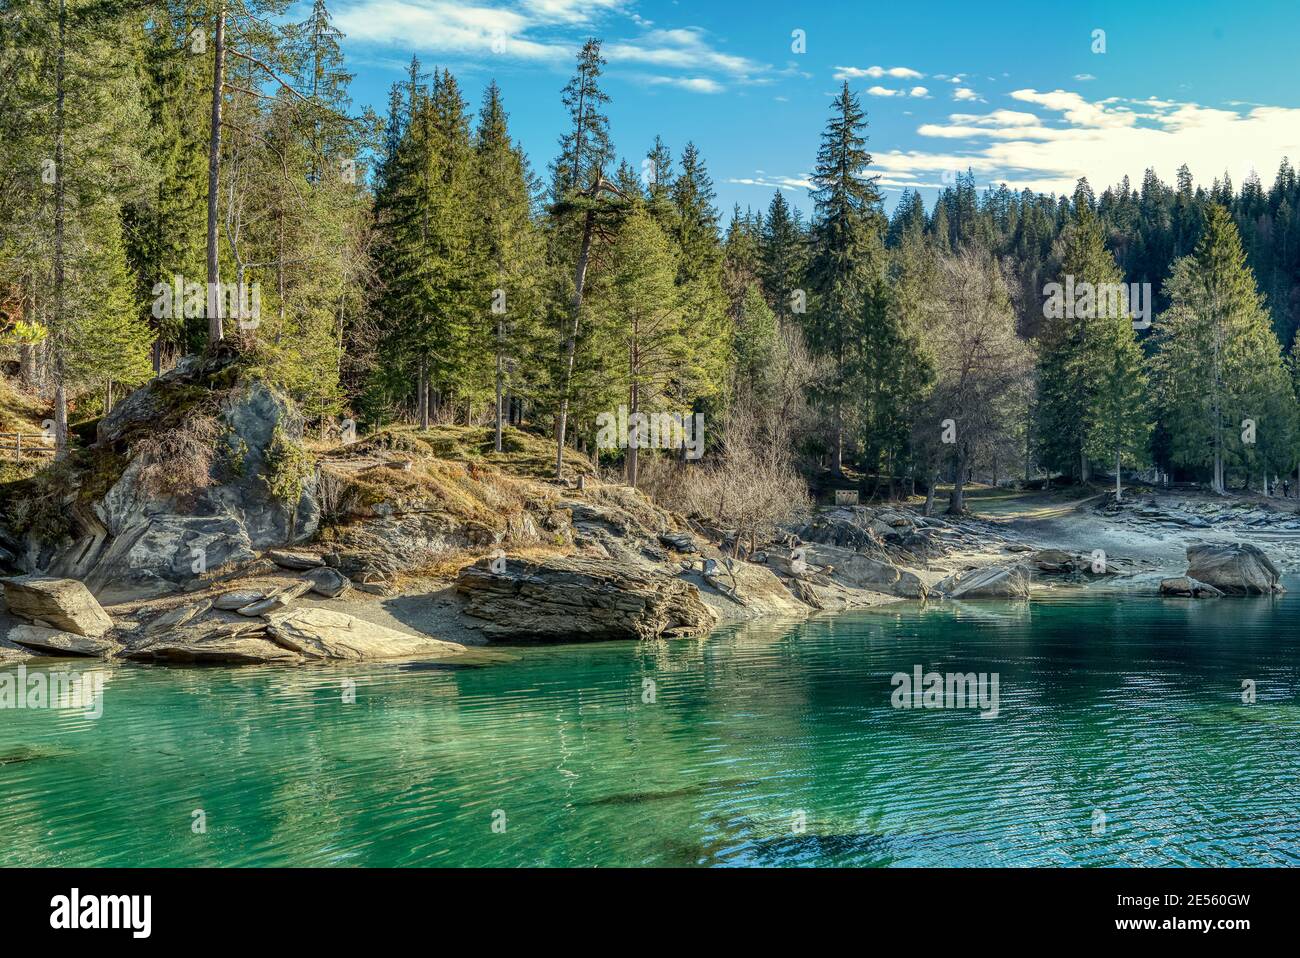 Belle scène de nature au lac de montagne Caumasee dans les Alpes suisses. Flims, Suisse Banque D'Images